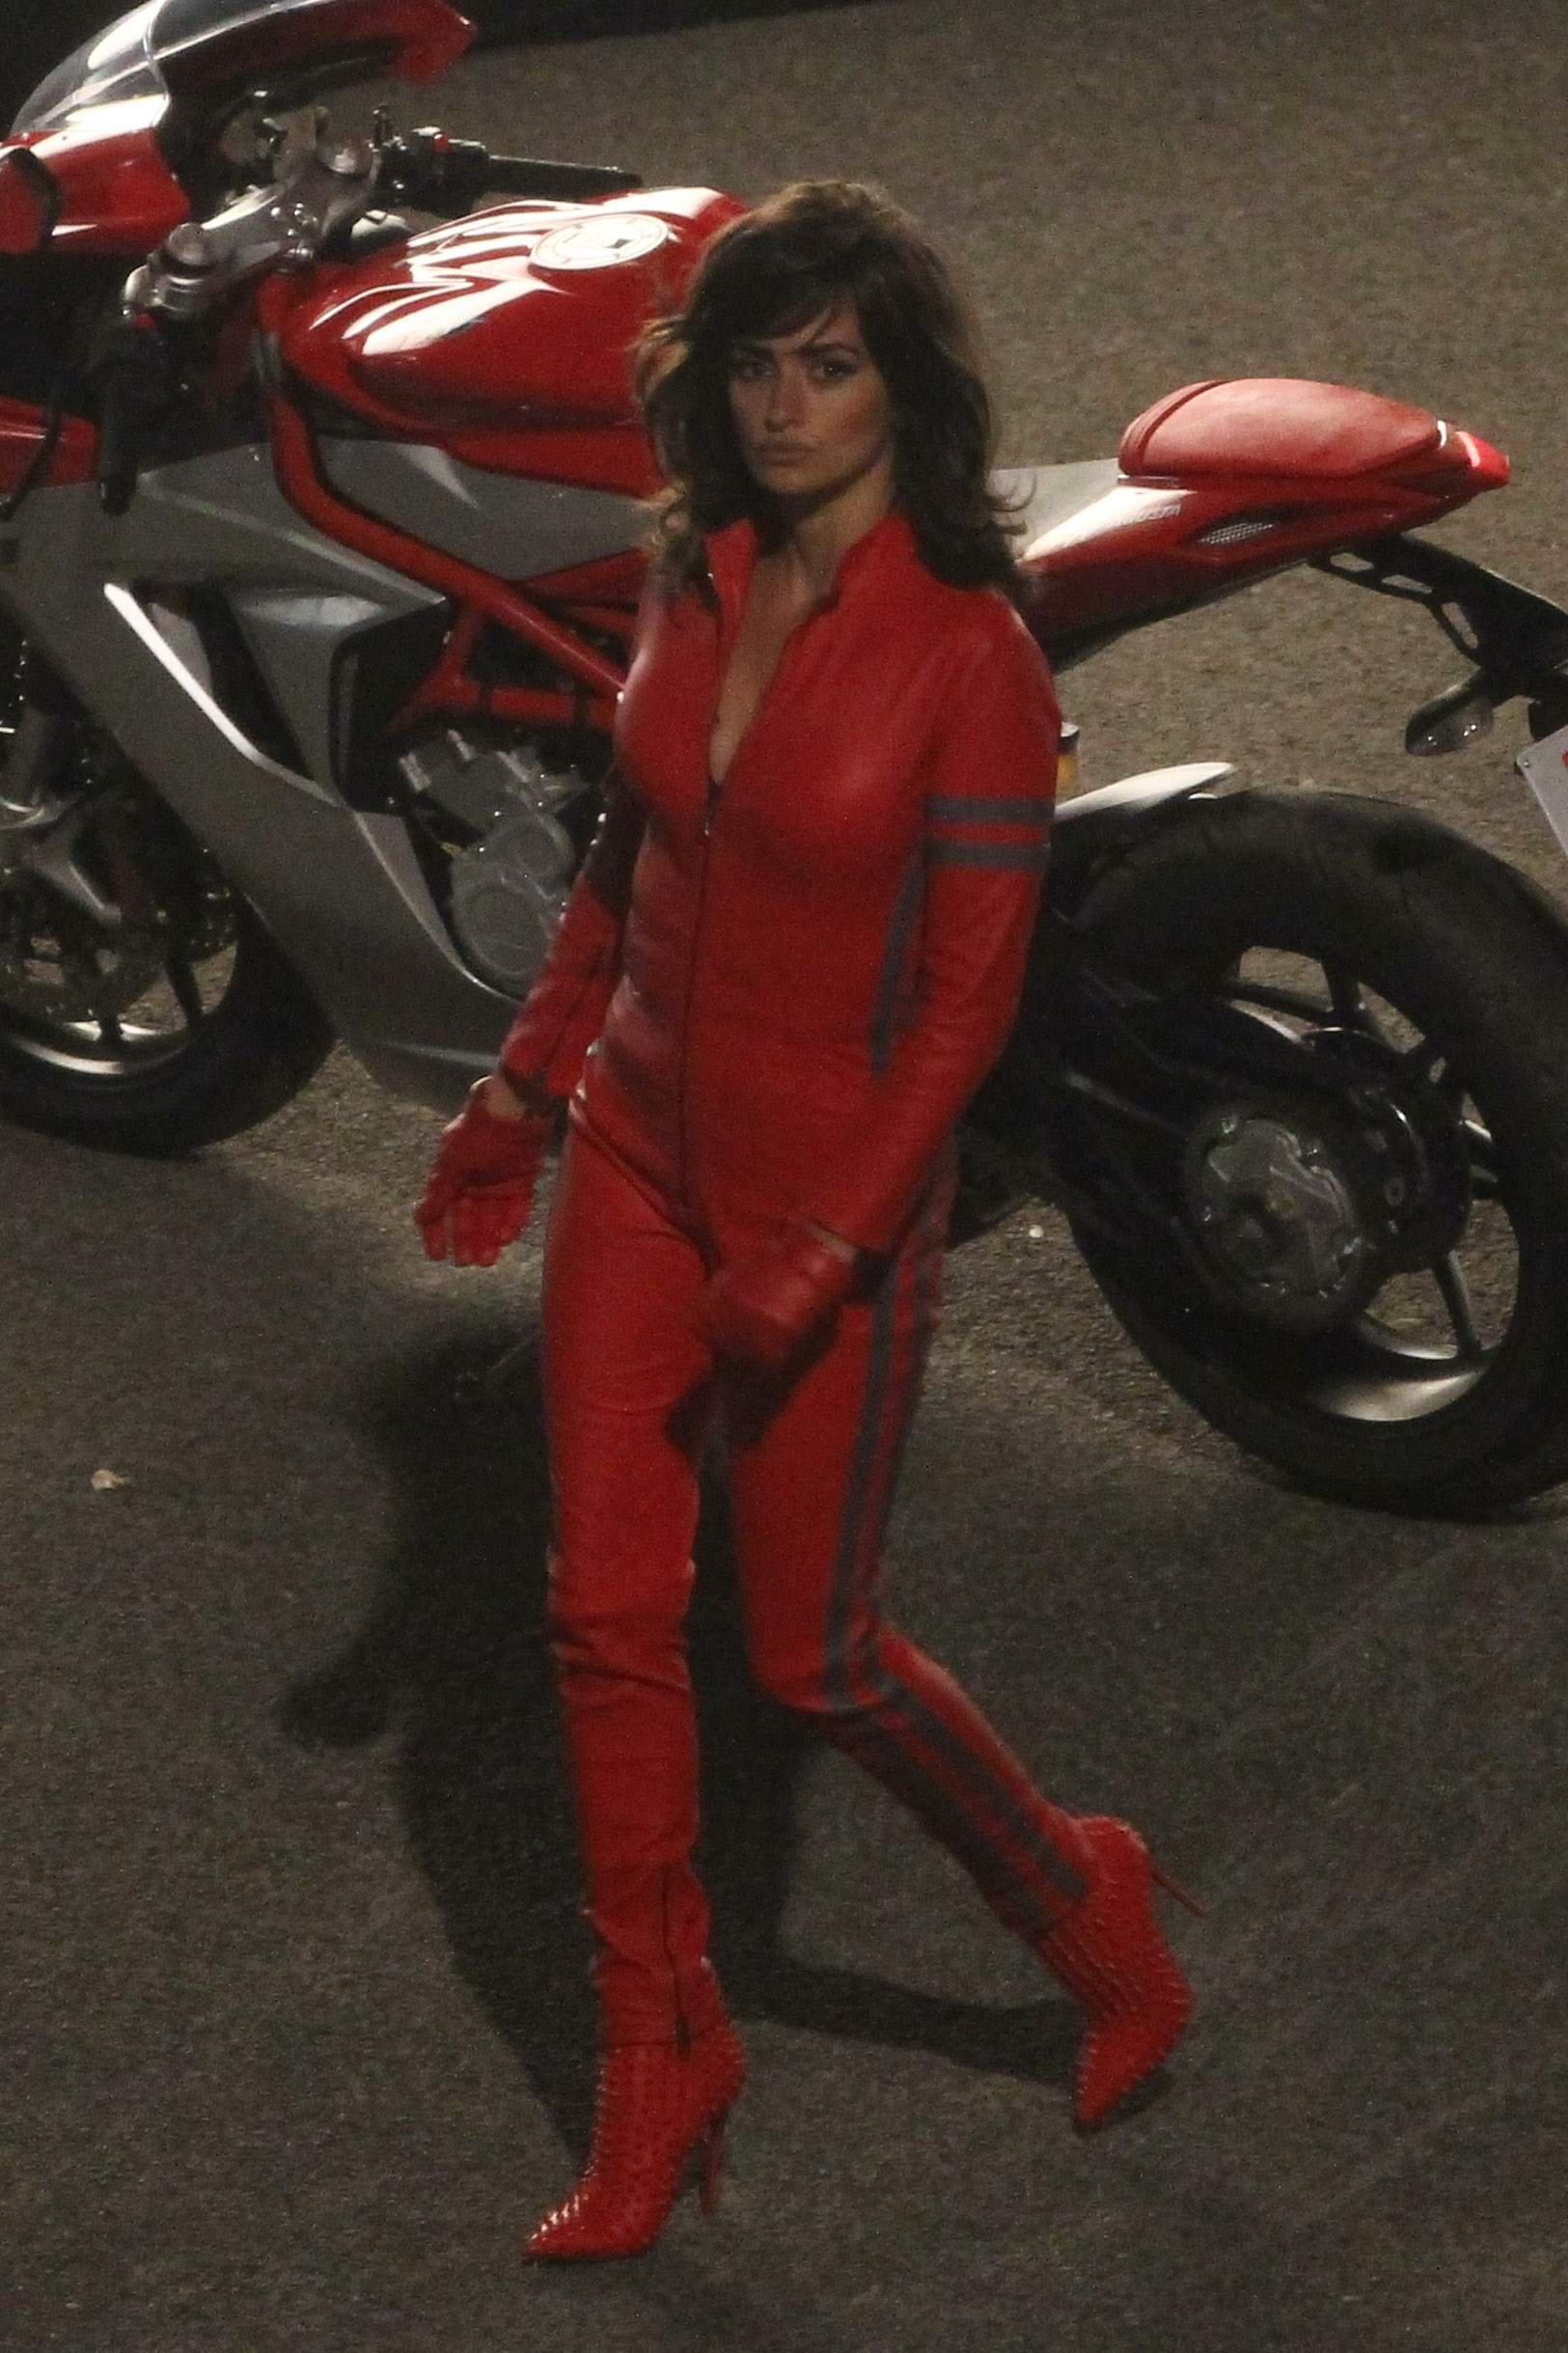 Penelope Cruz films some night scenes for Zoolander 2